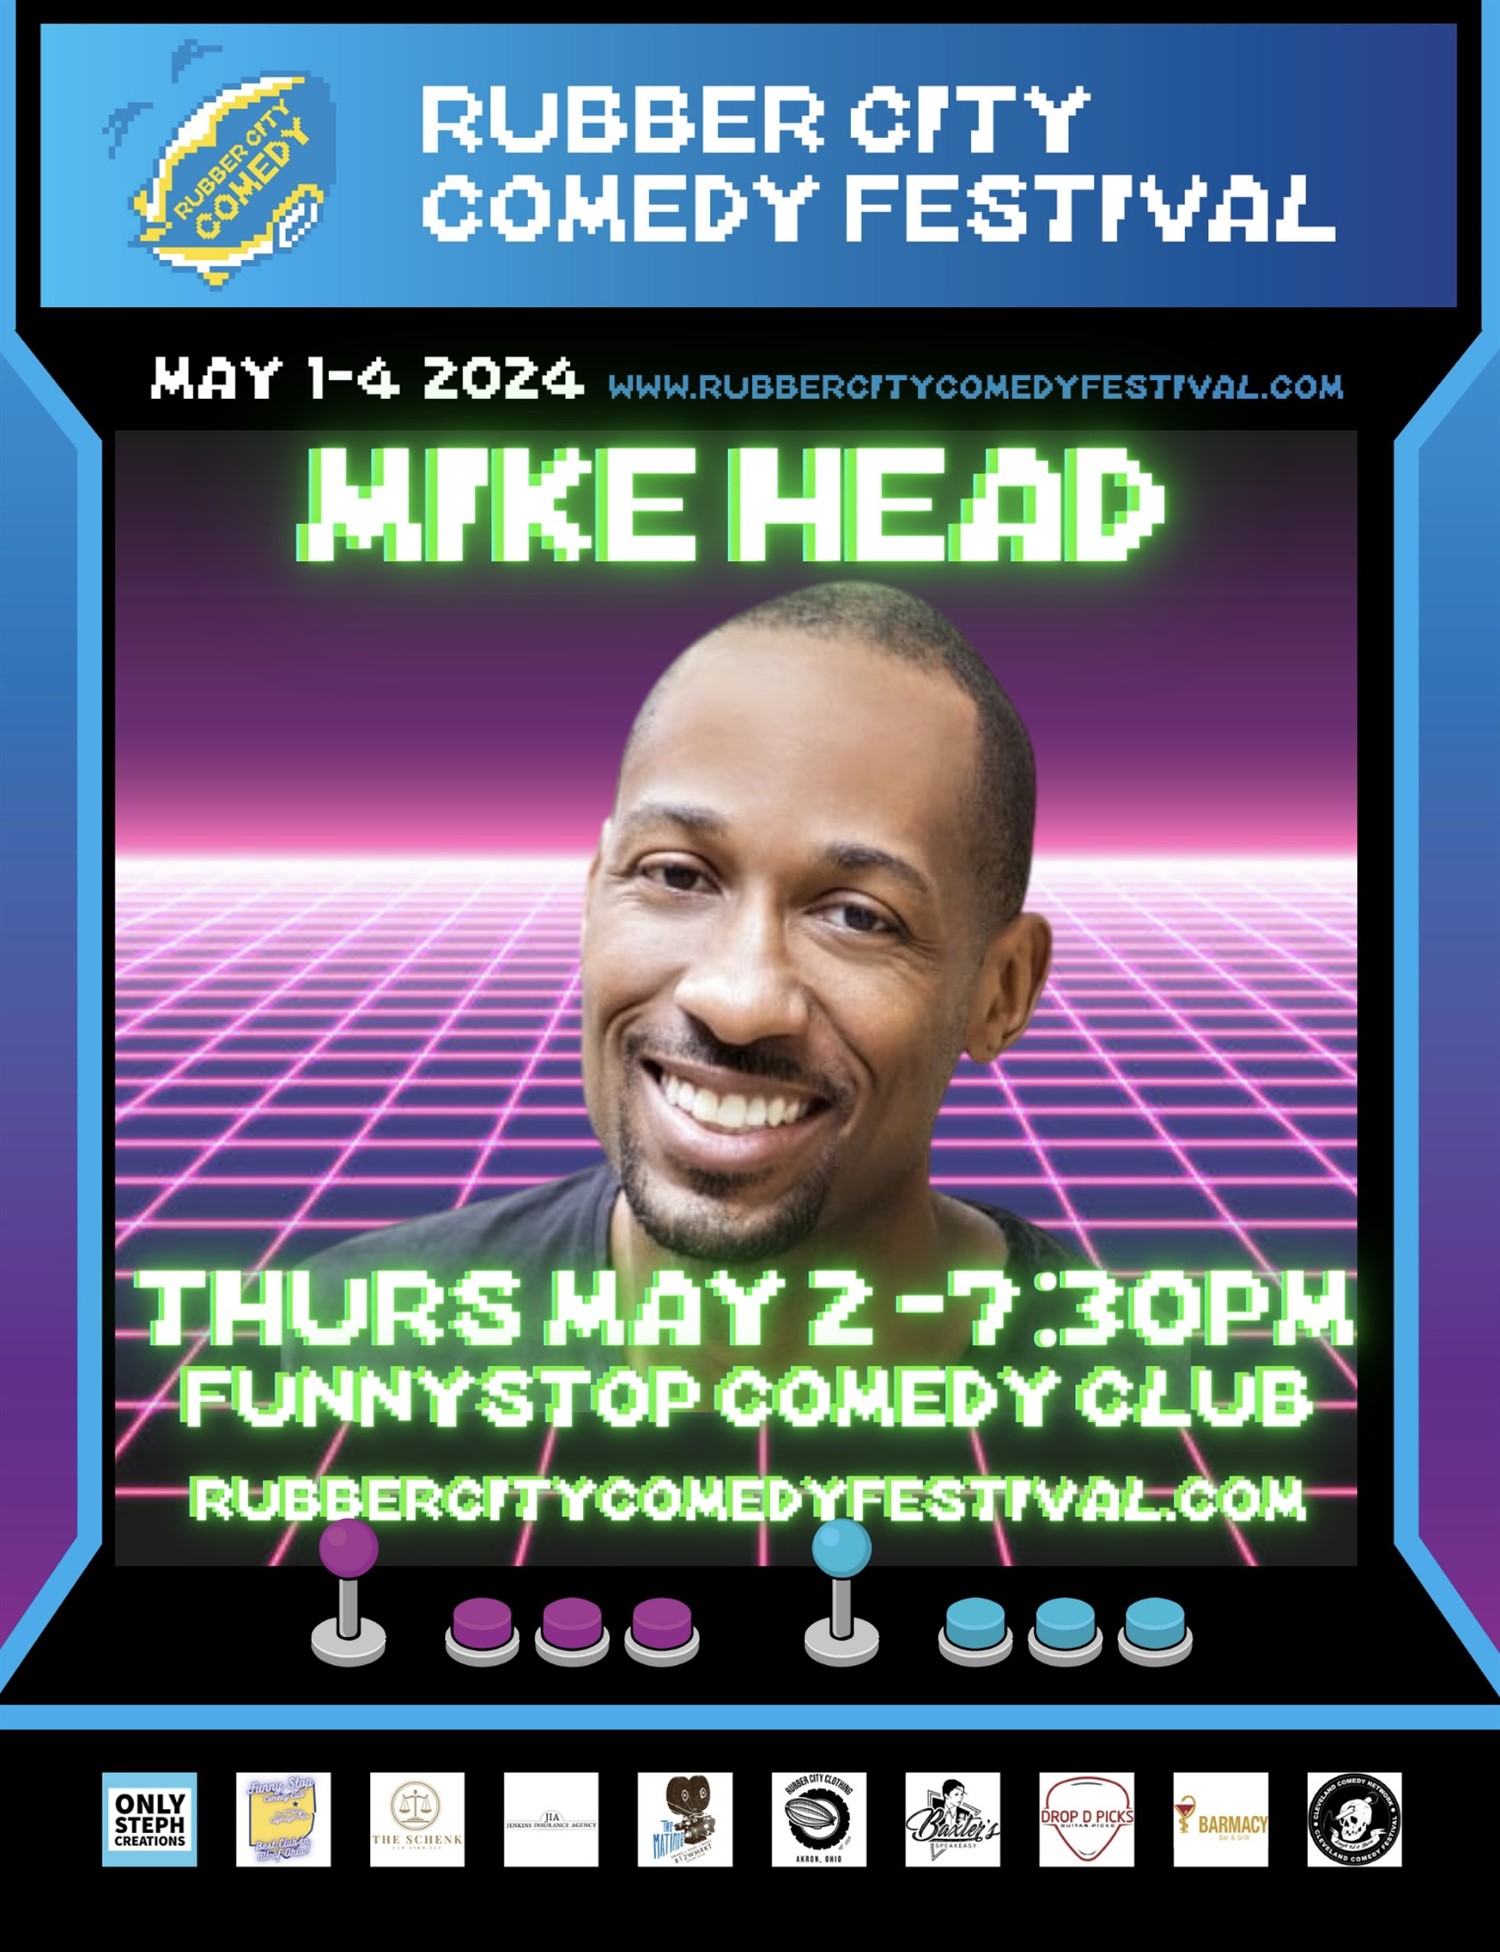 Mike Head Headlines for Rubber City Comedy Festival Funny Stop Comedy Club on may. 02, 19:30@Funny Stop Comedy Club - Compra entradas y obtén información enFunny Stop funnystop.online